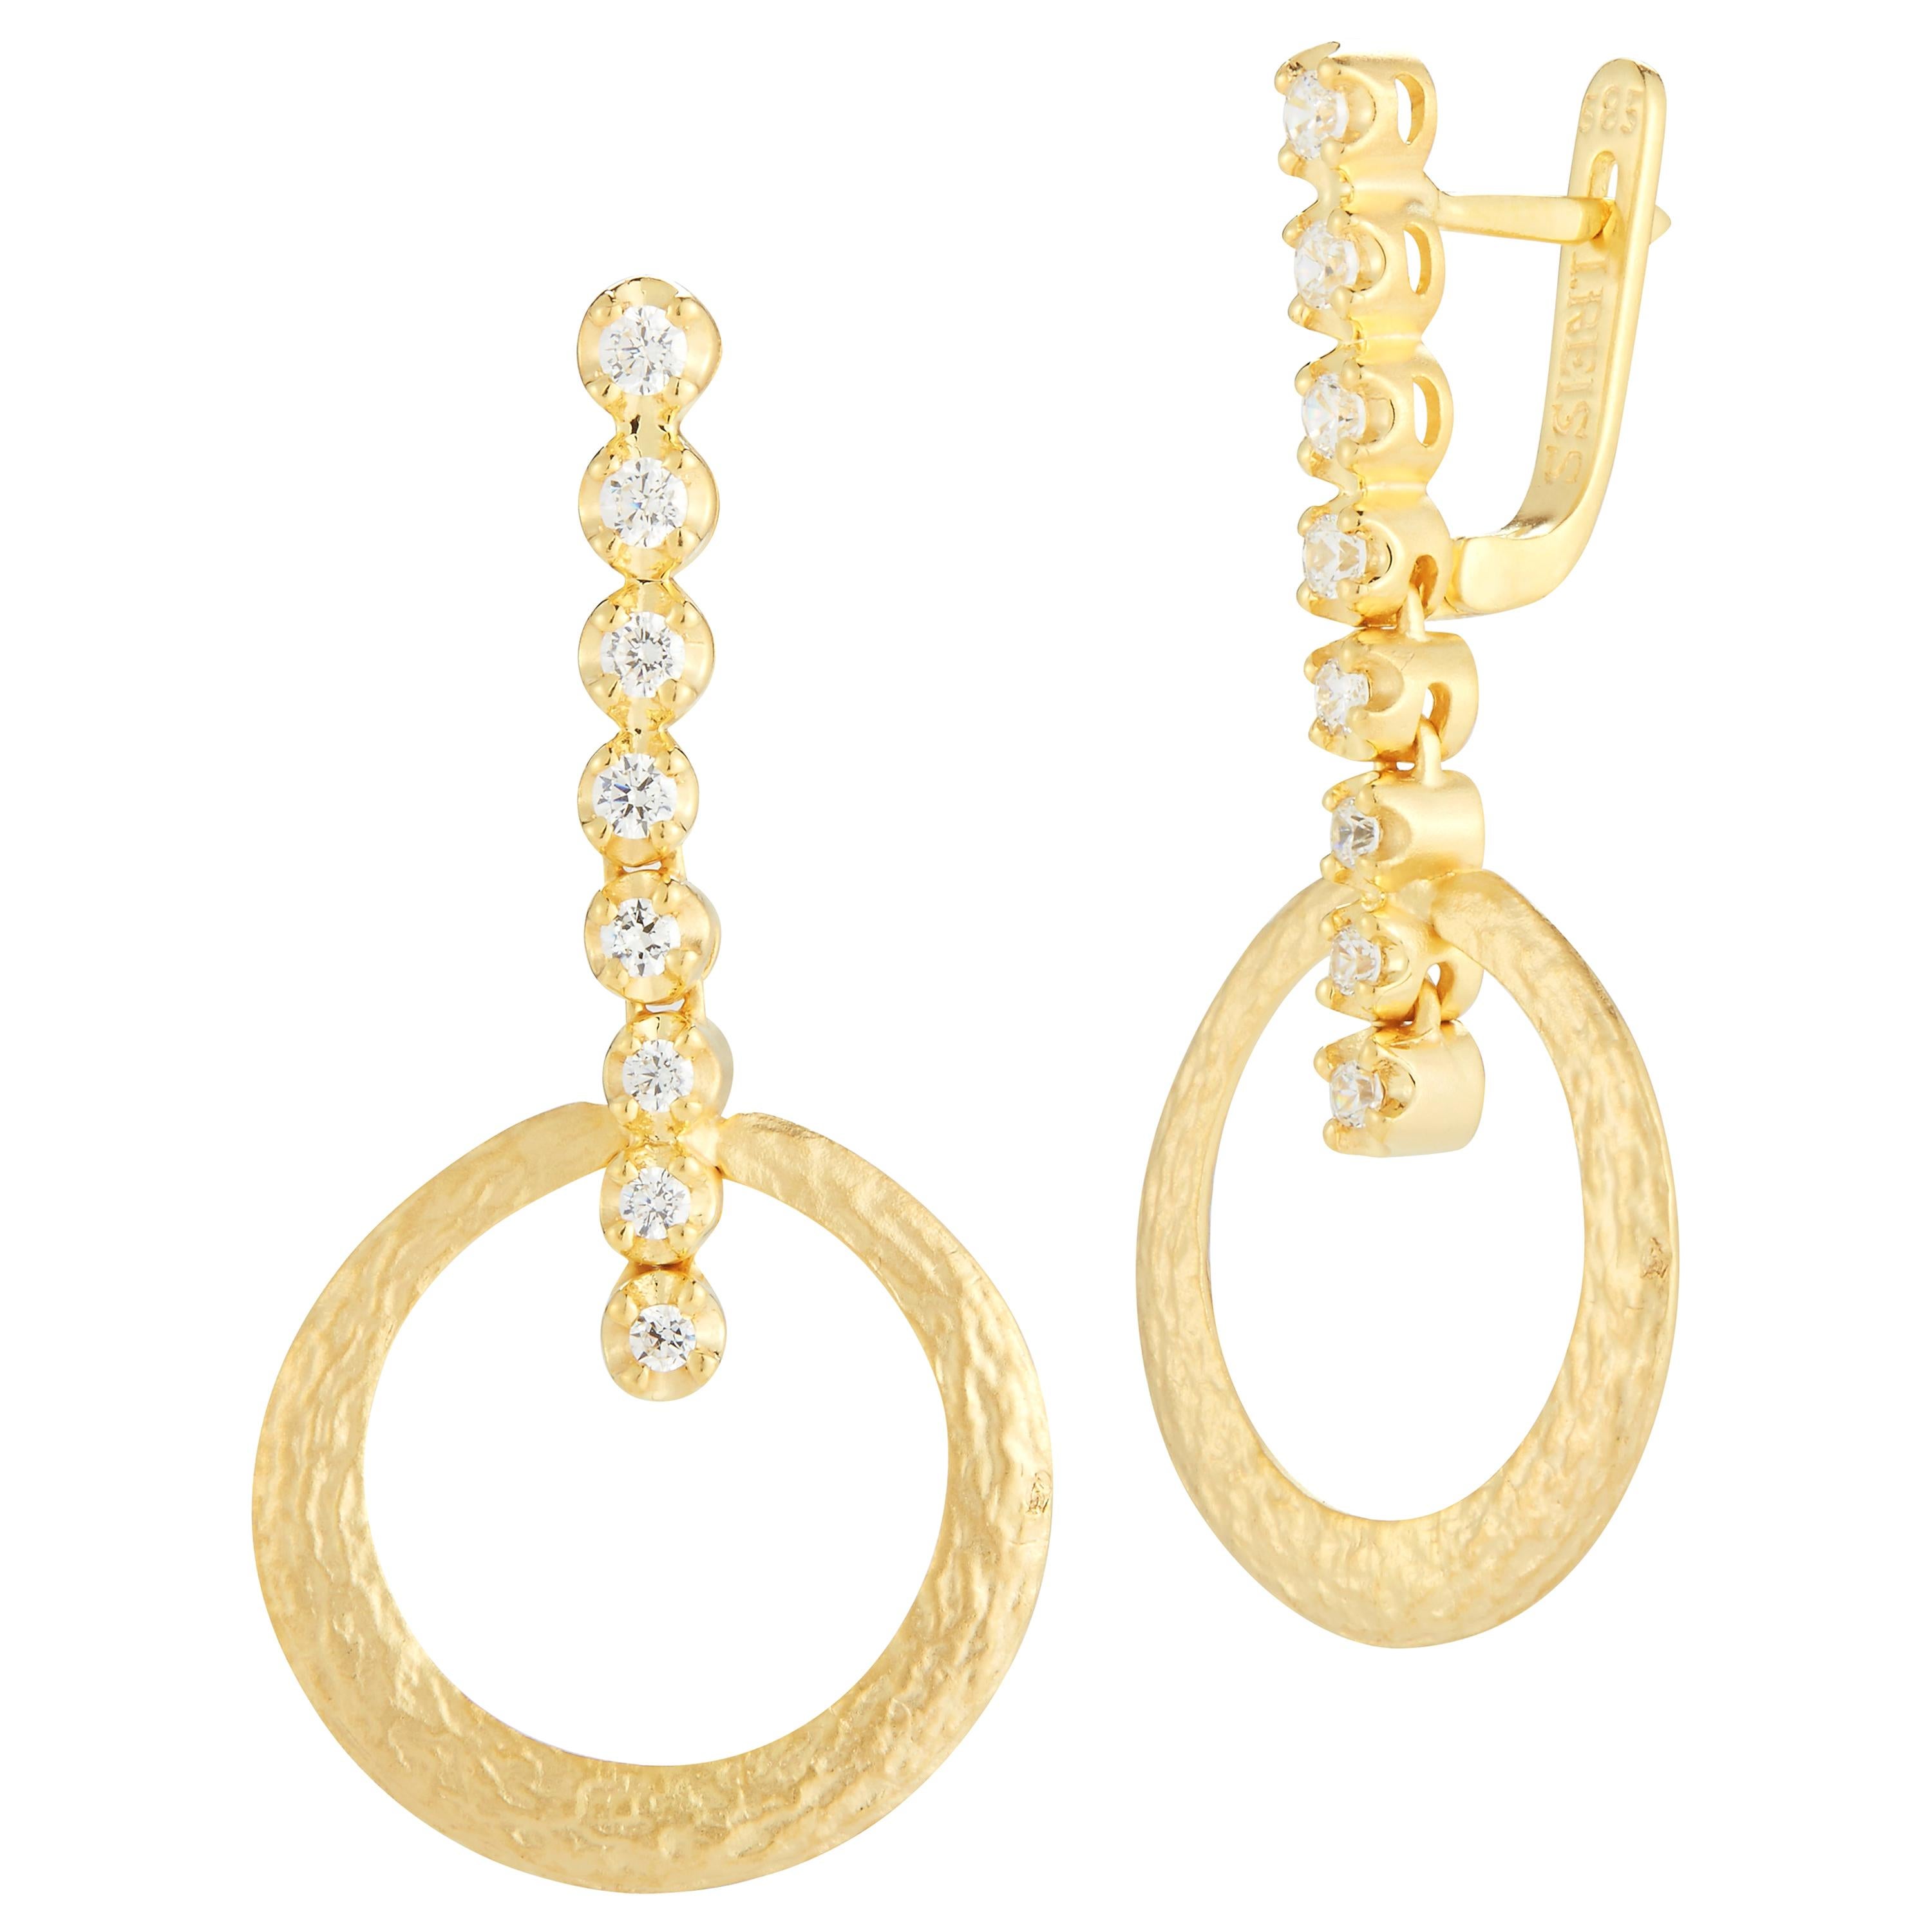 Boucles d'oreilles en or jaune 14 carats à cercles ouverts et pendantes, fabriquées à la main